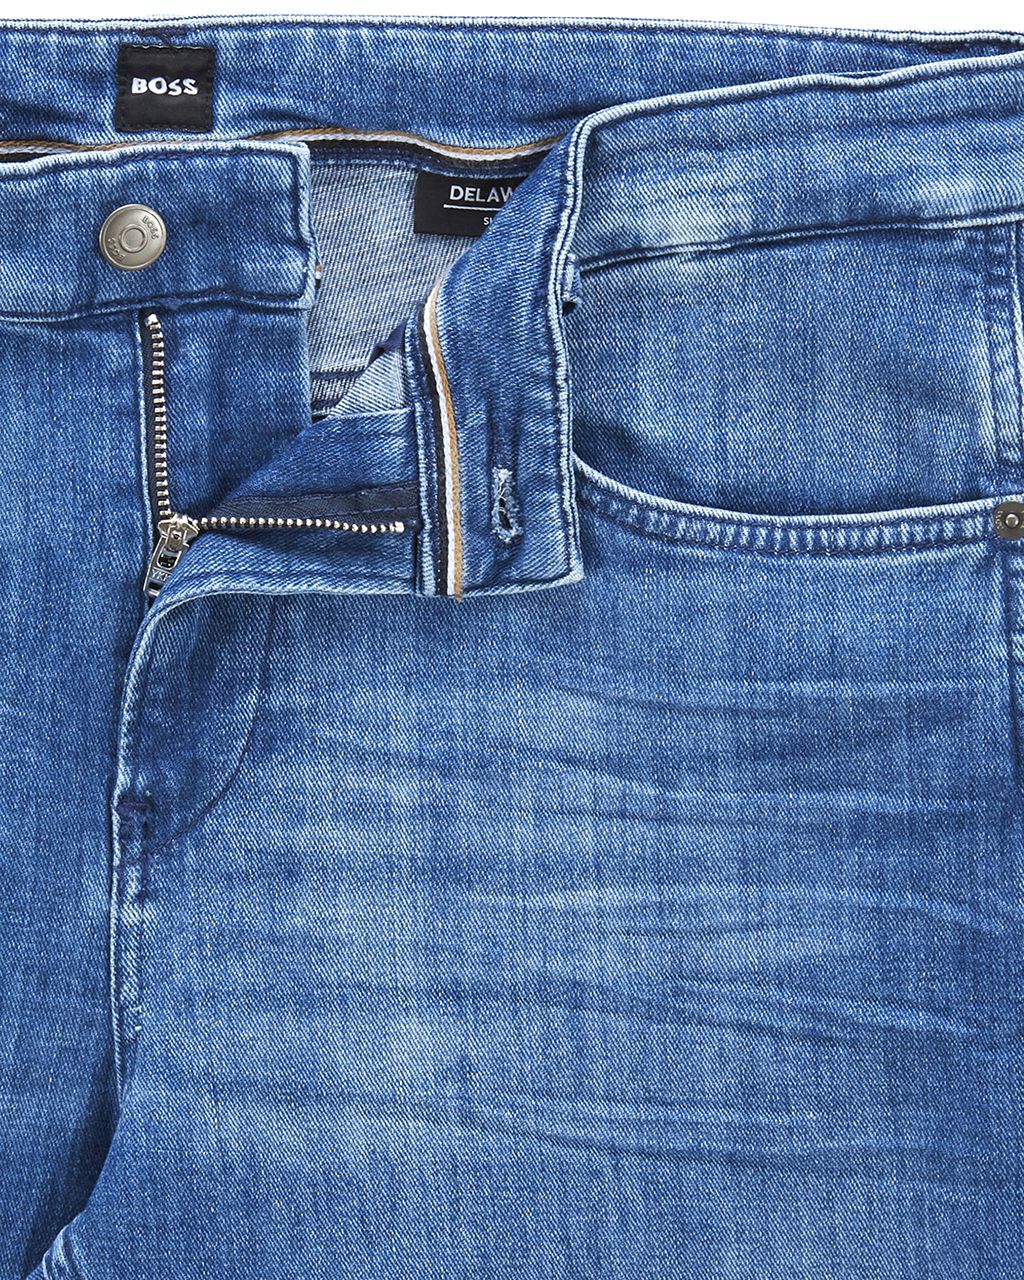 Hugo Boss Menswear Delaware Jeans Blauw 076339-001-31/32